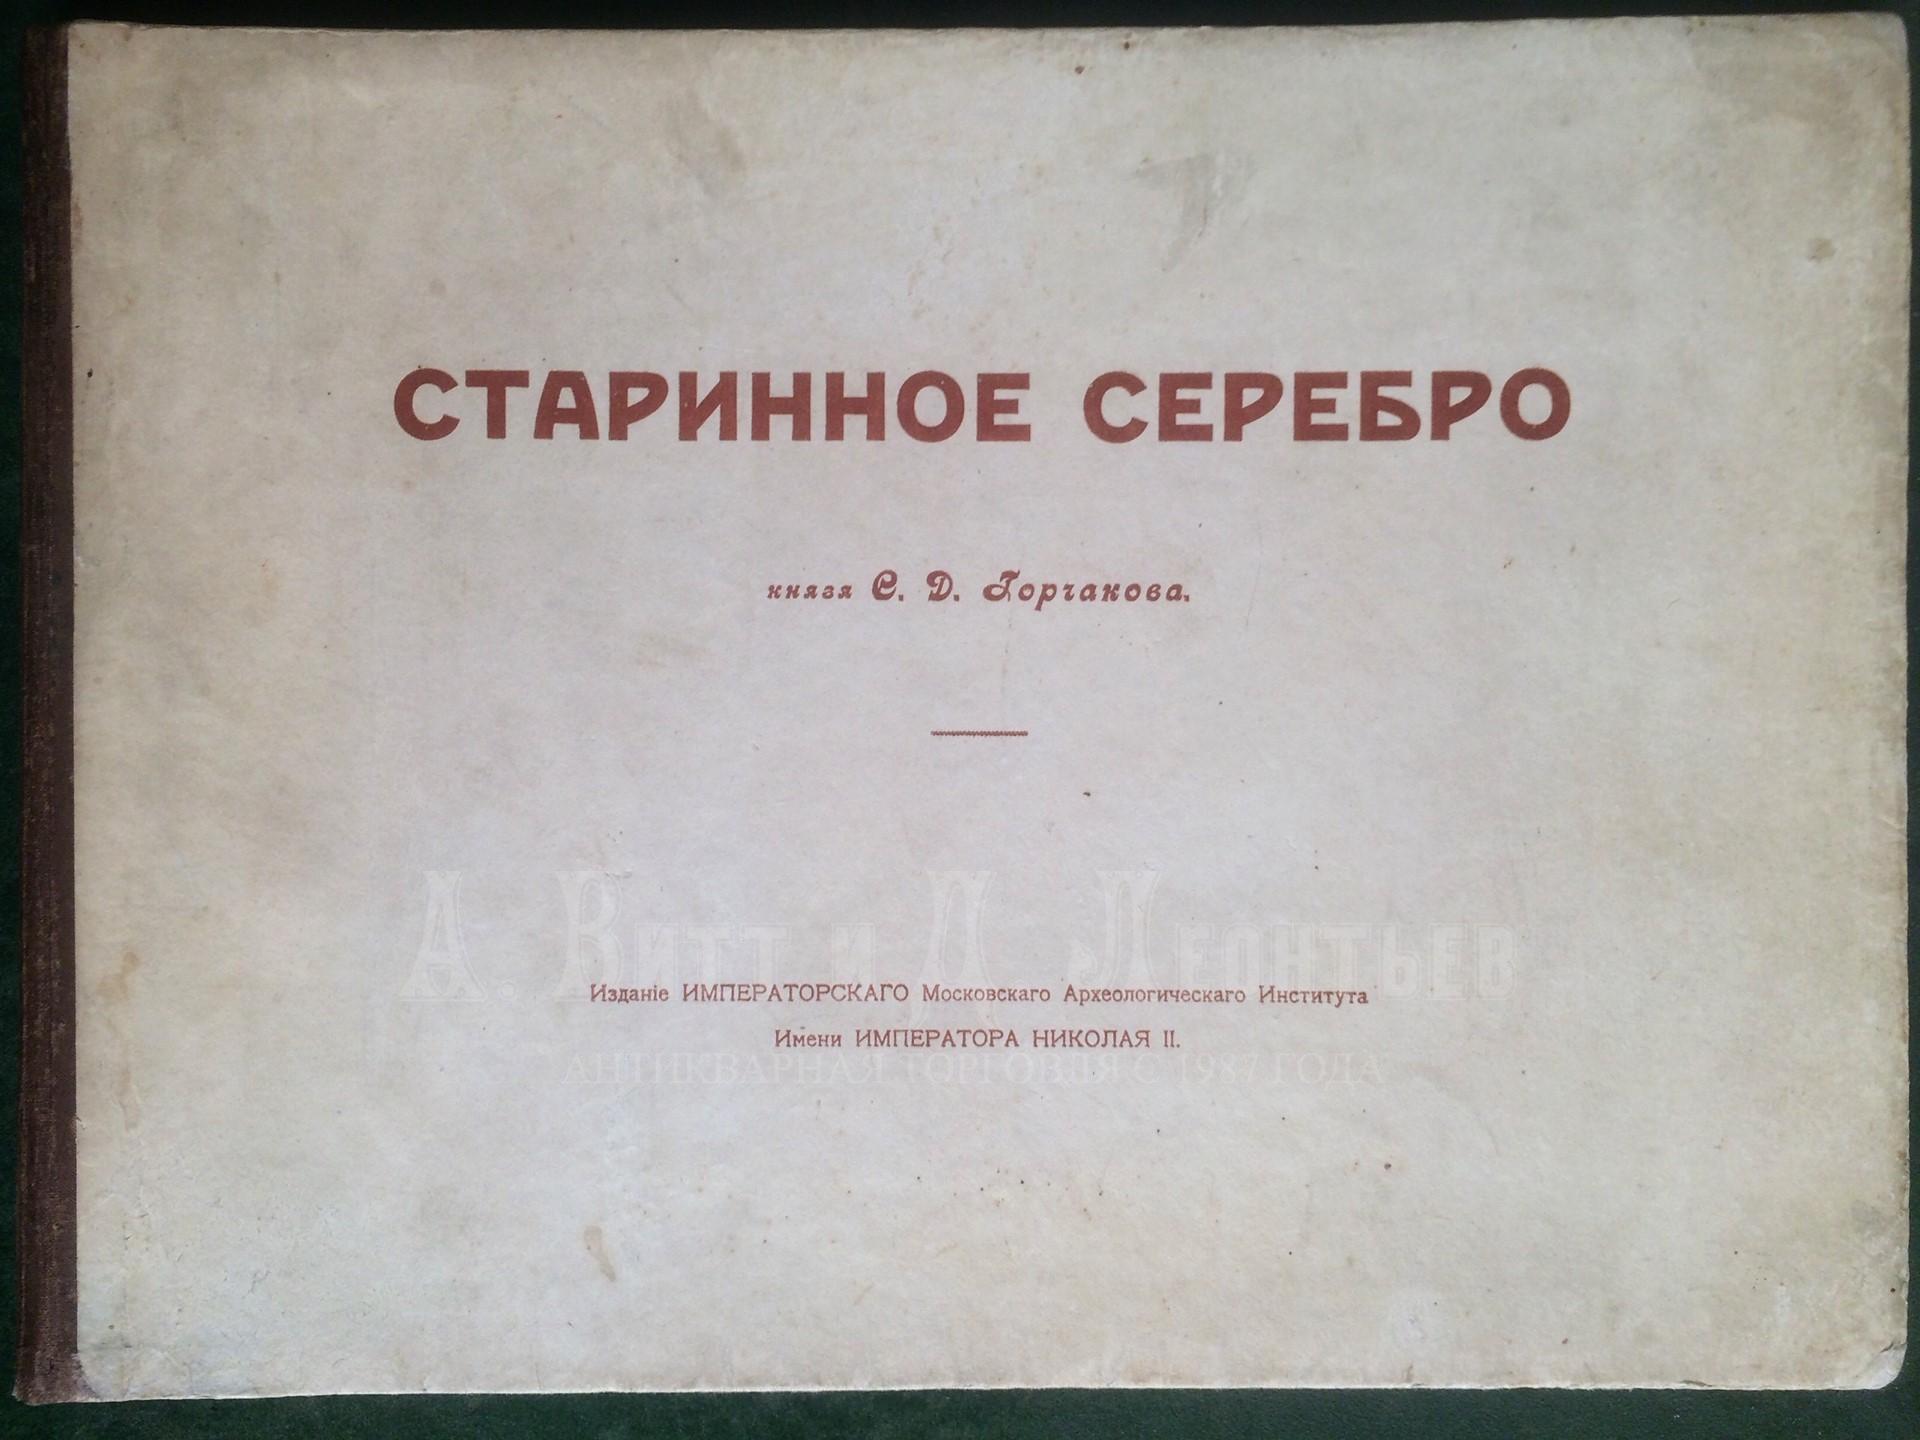 Два Евангелия и старинное серебро из собрания князя Сергея Дмитриевича Горчакова в Калуге.